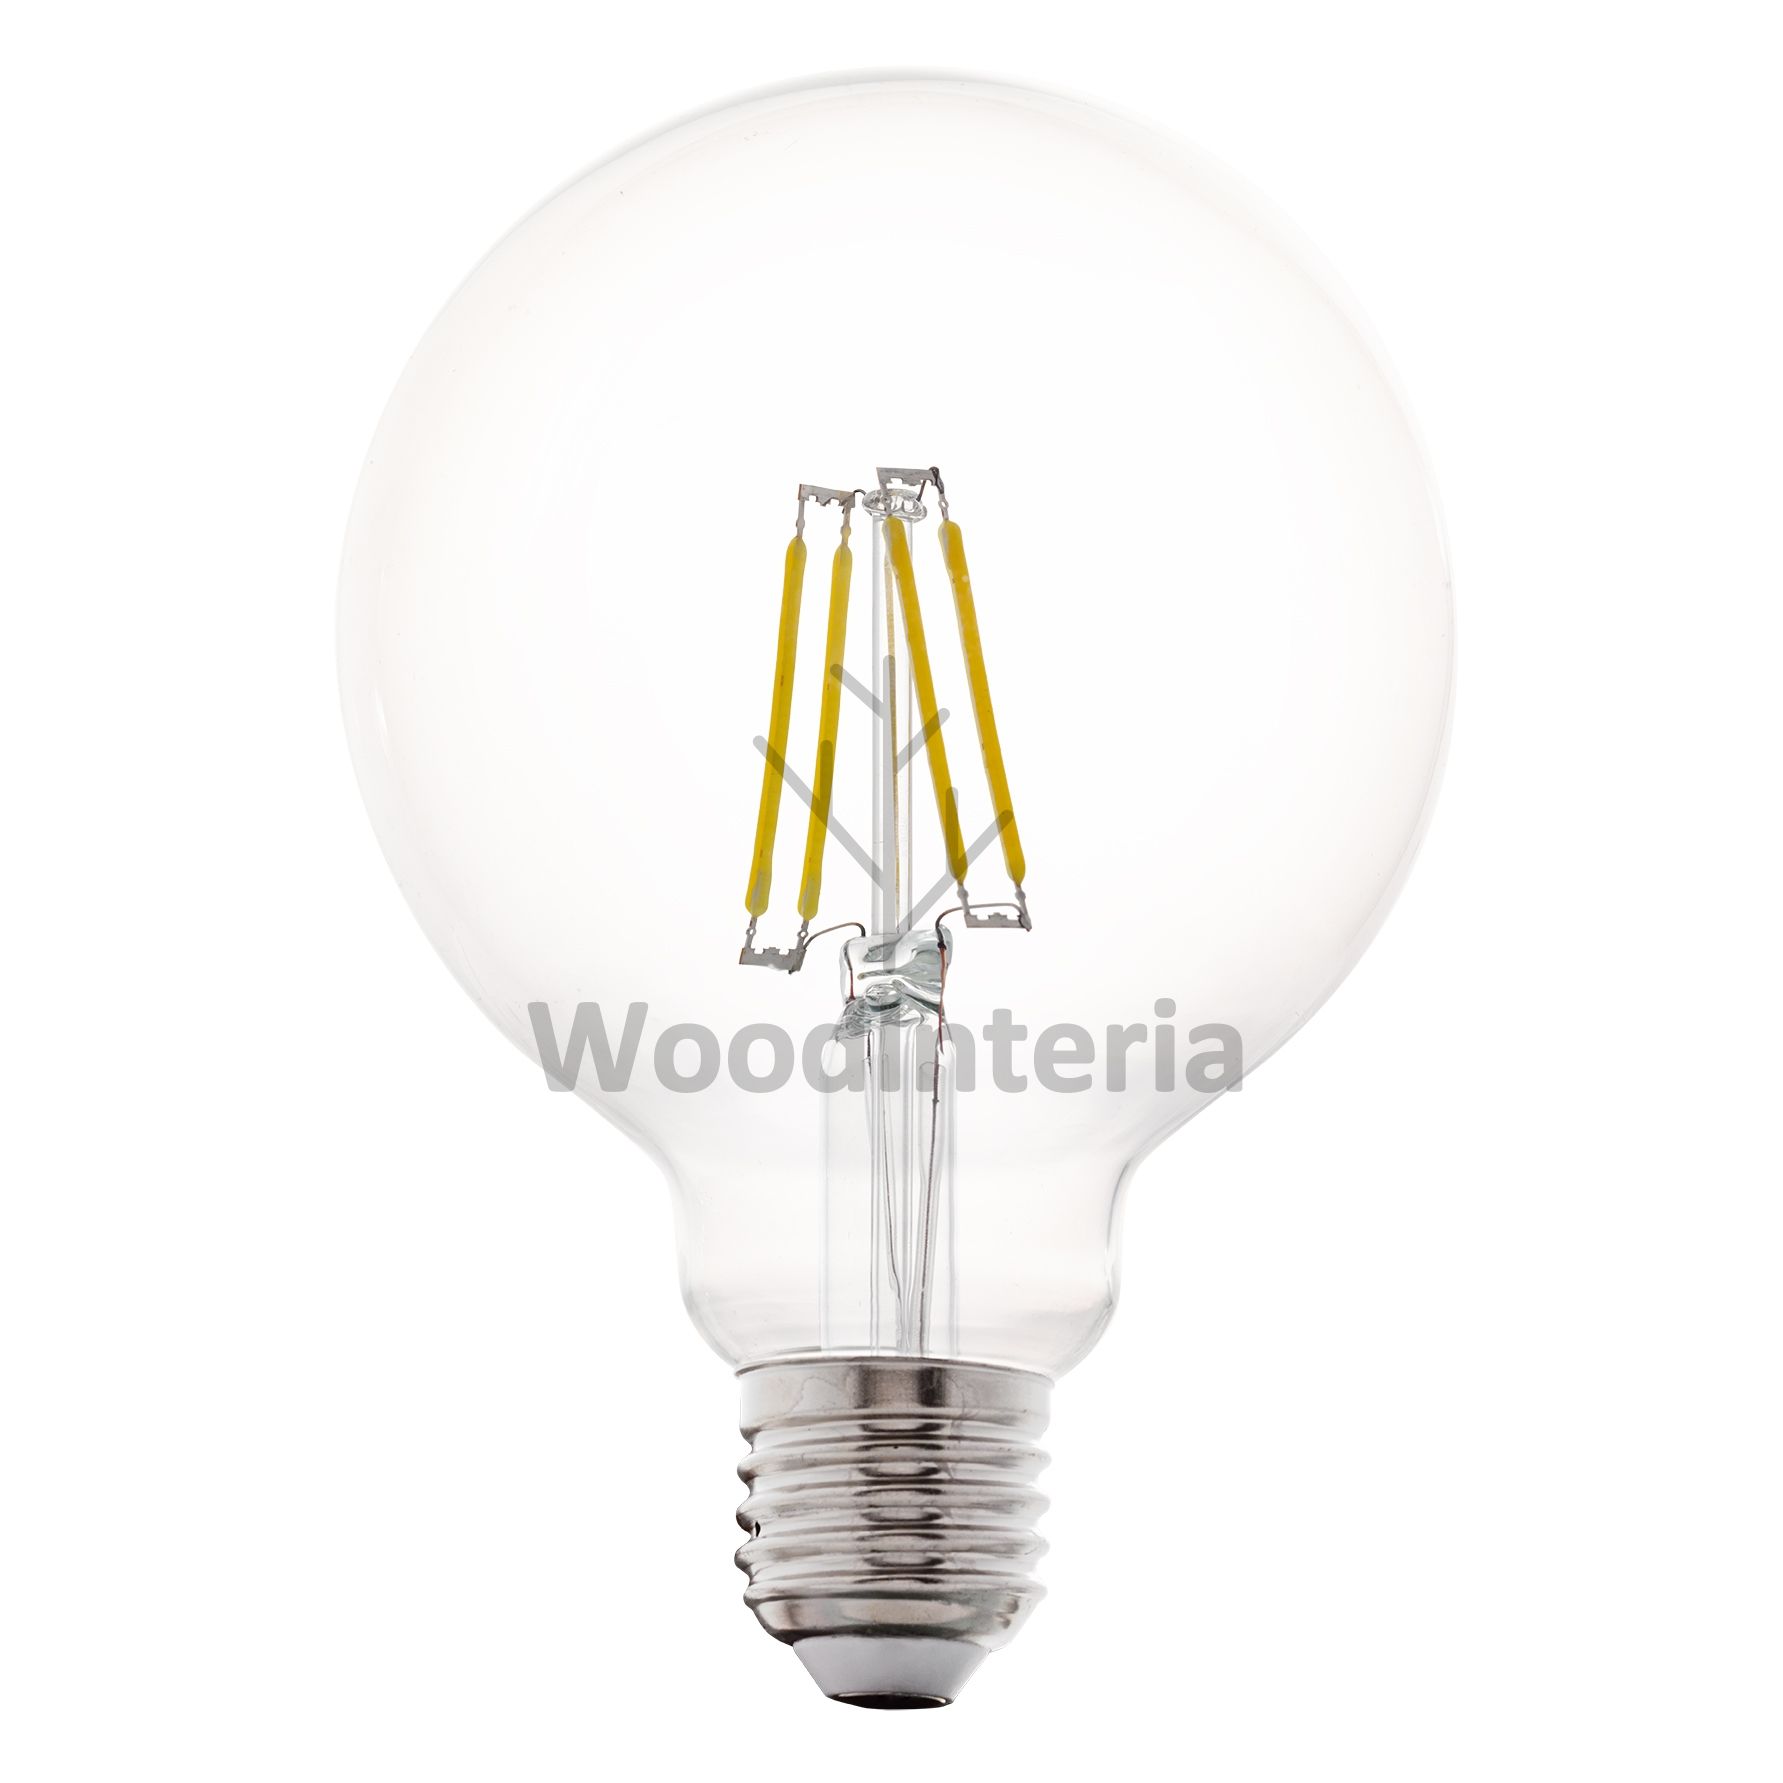 фото лампочка clean bulb #3 в скандинавском интерьере лофт эко | WoodInteria